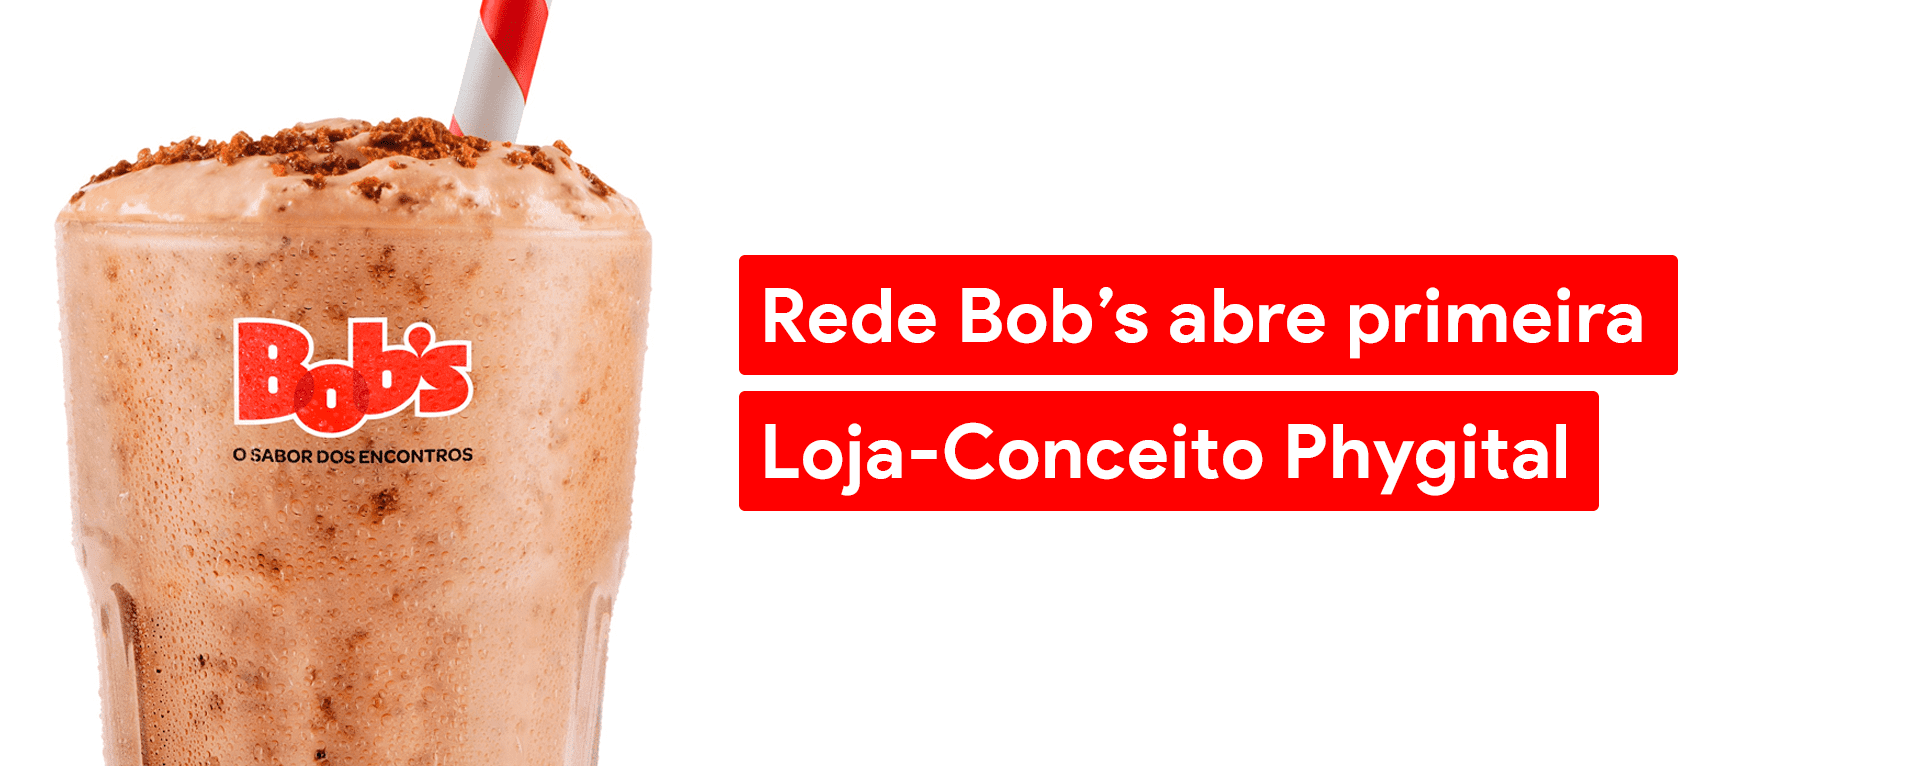 Rede Bob’s Abre Primeira Loja-Conceito Phygital em Campinas